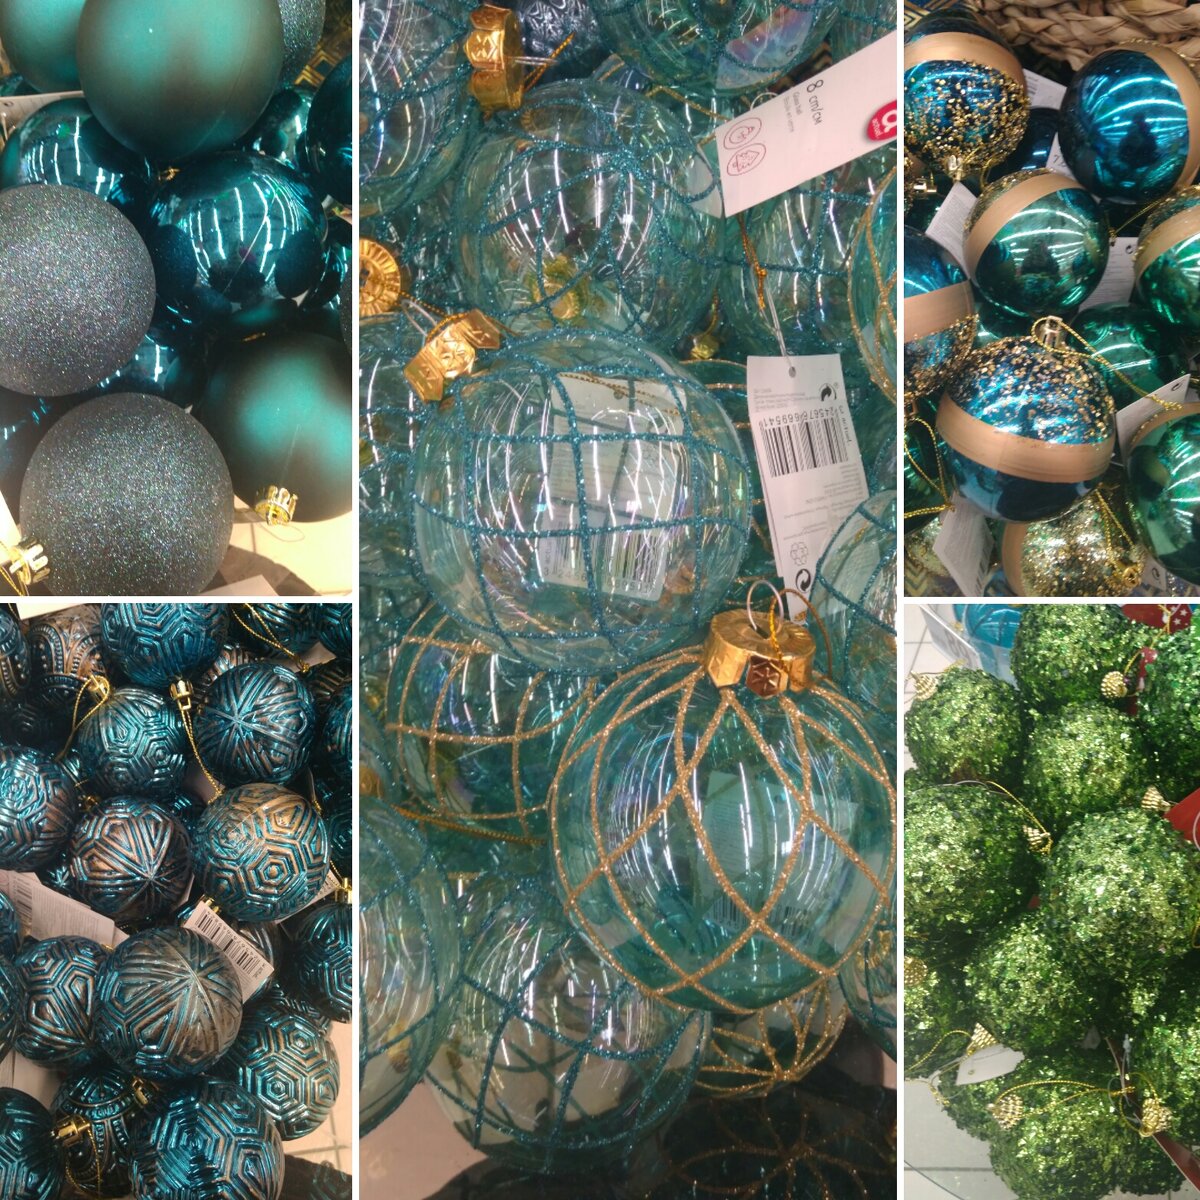 Разнообразие шаров в сине-зелёной цветовой гамме. Листайте галерею, чтобы увидеть фото крупнее